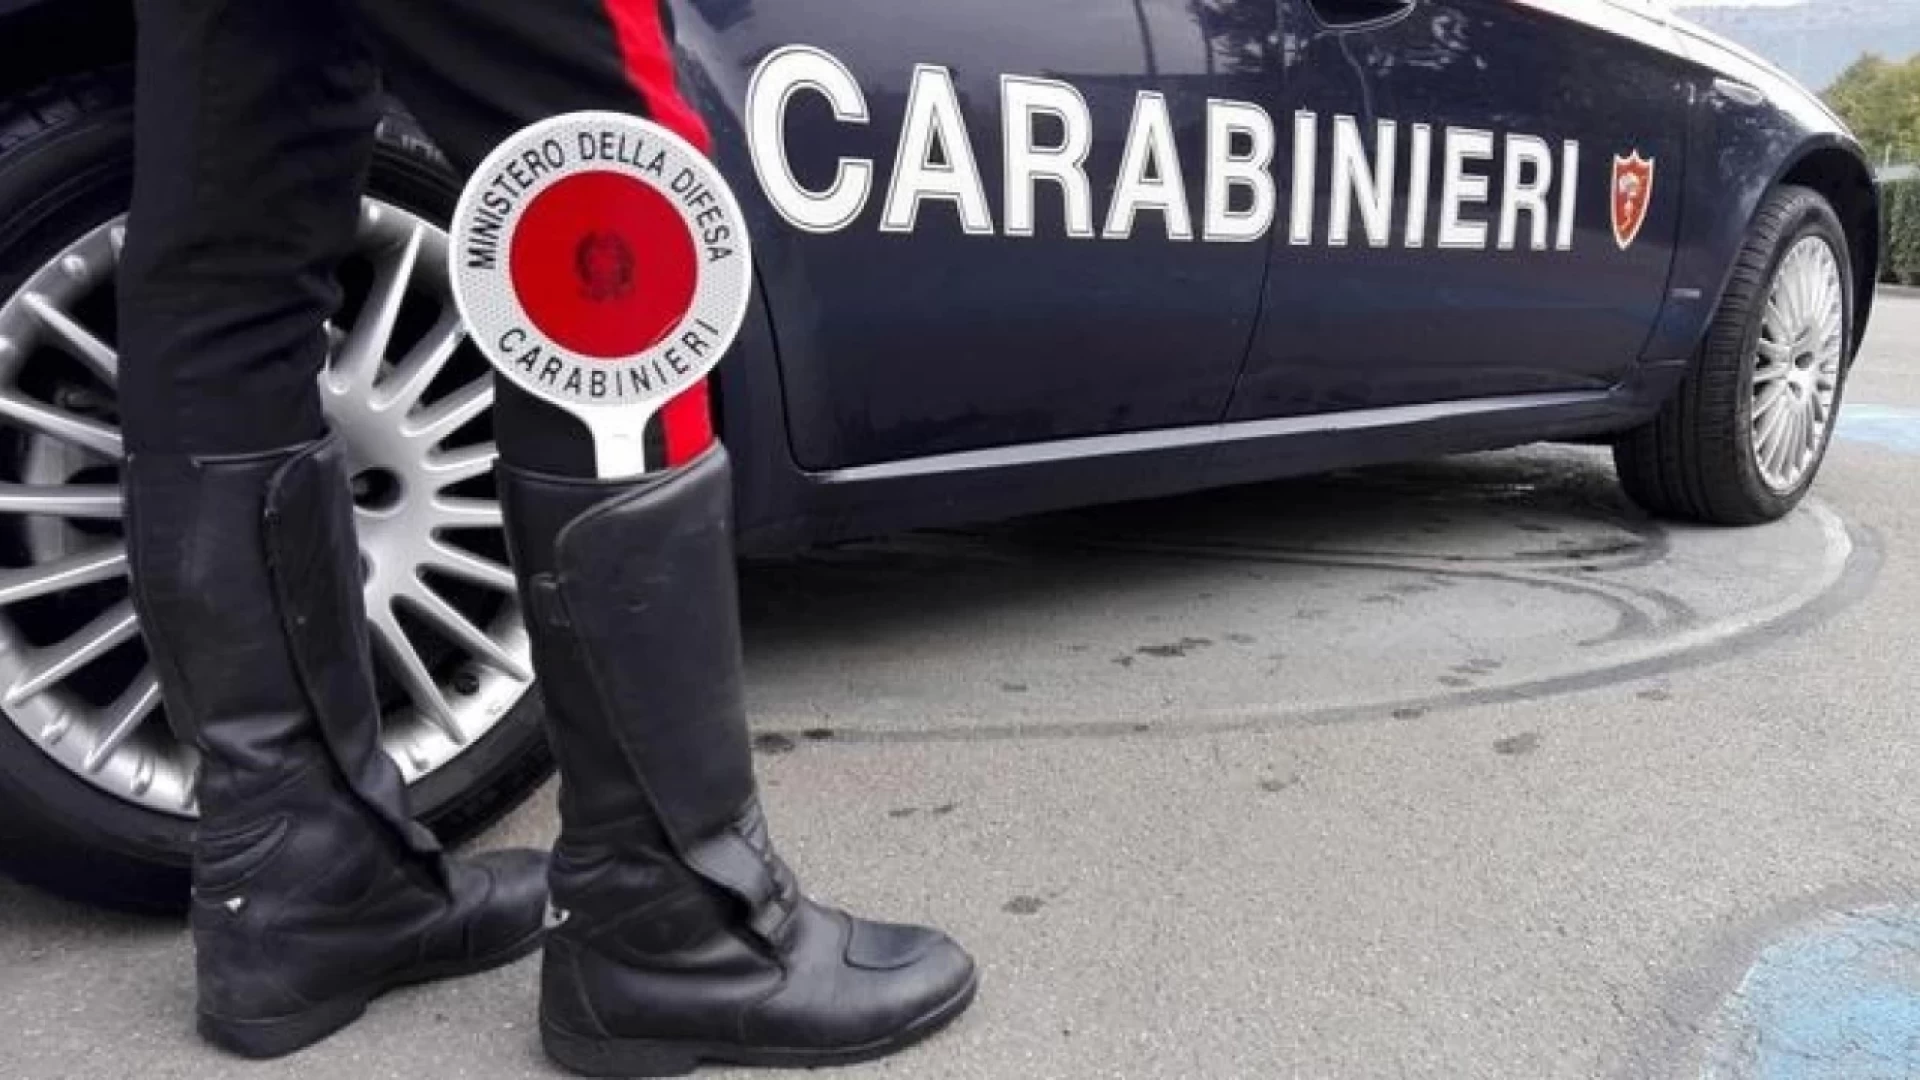 Avezzano: contravviene al divieto di avvicinamento. Arrestato un uomo di 53 anni dai Carabinieri.